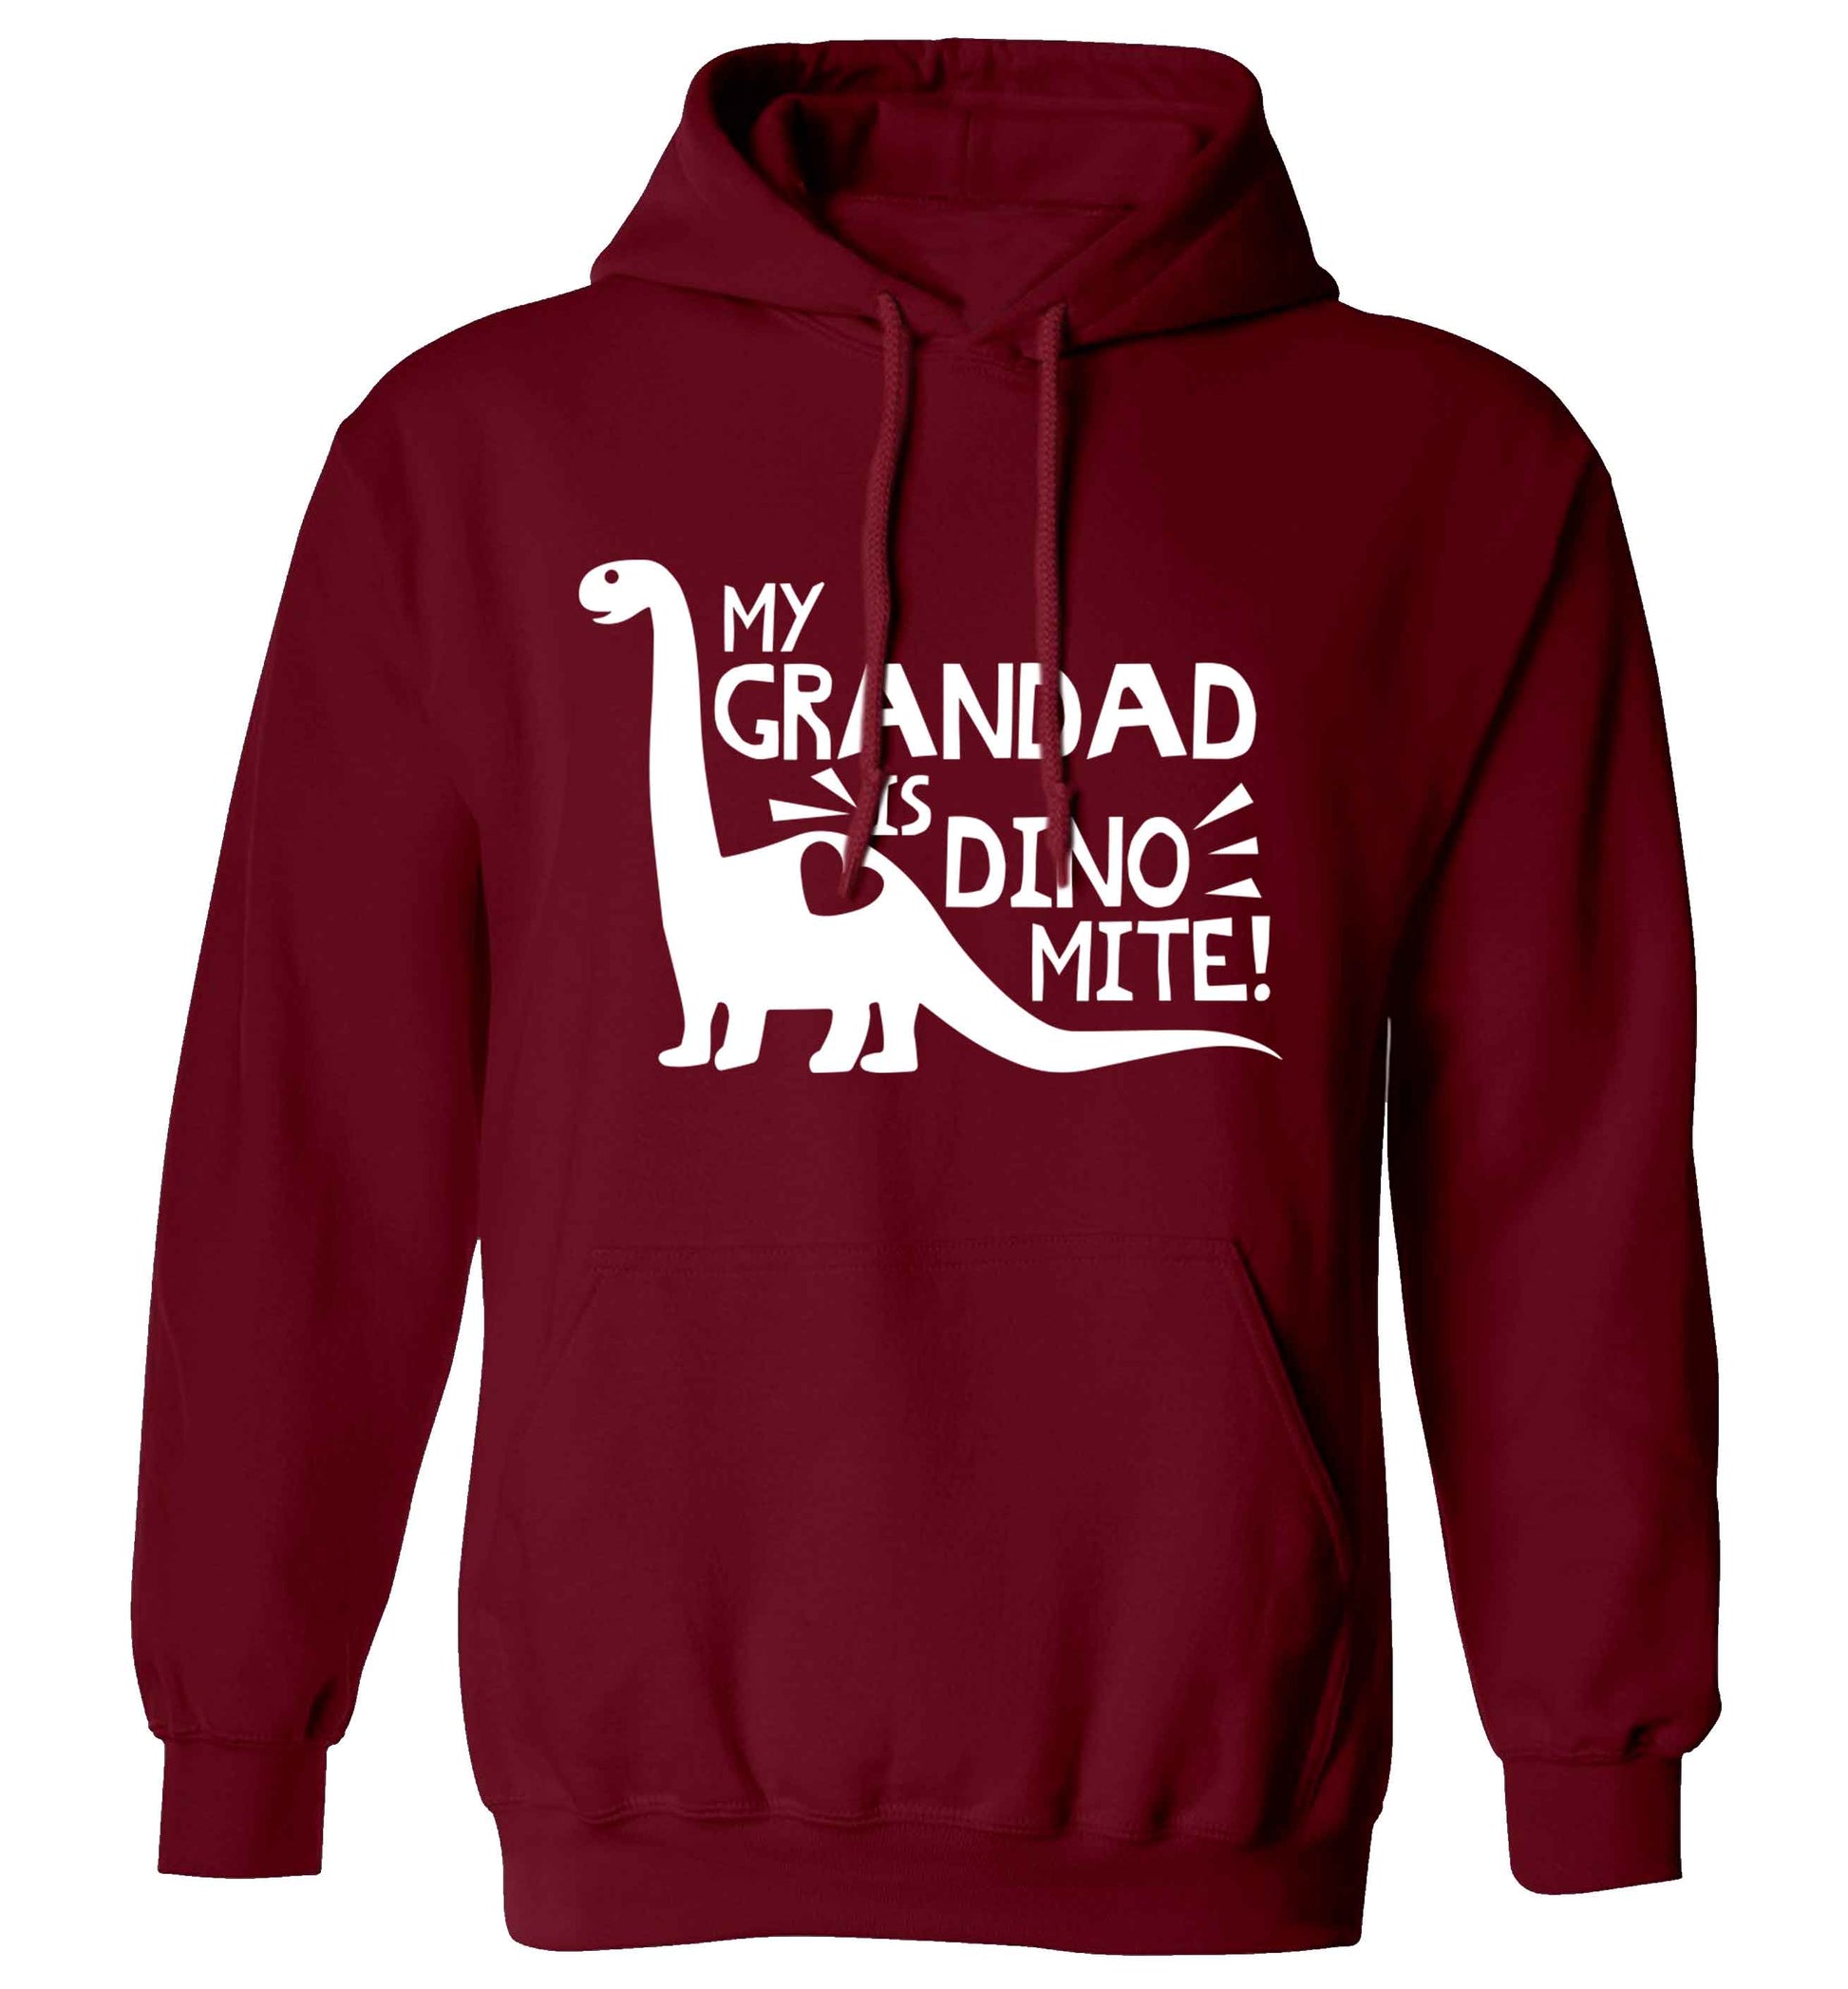 My grandad is dinomite! adults unisex maroon hoodie 2XL